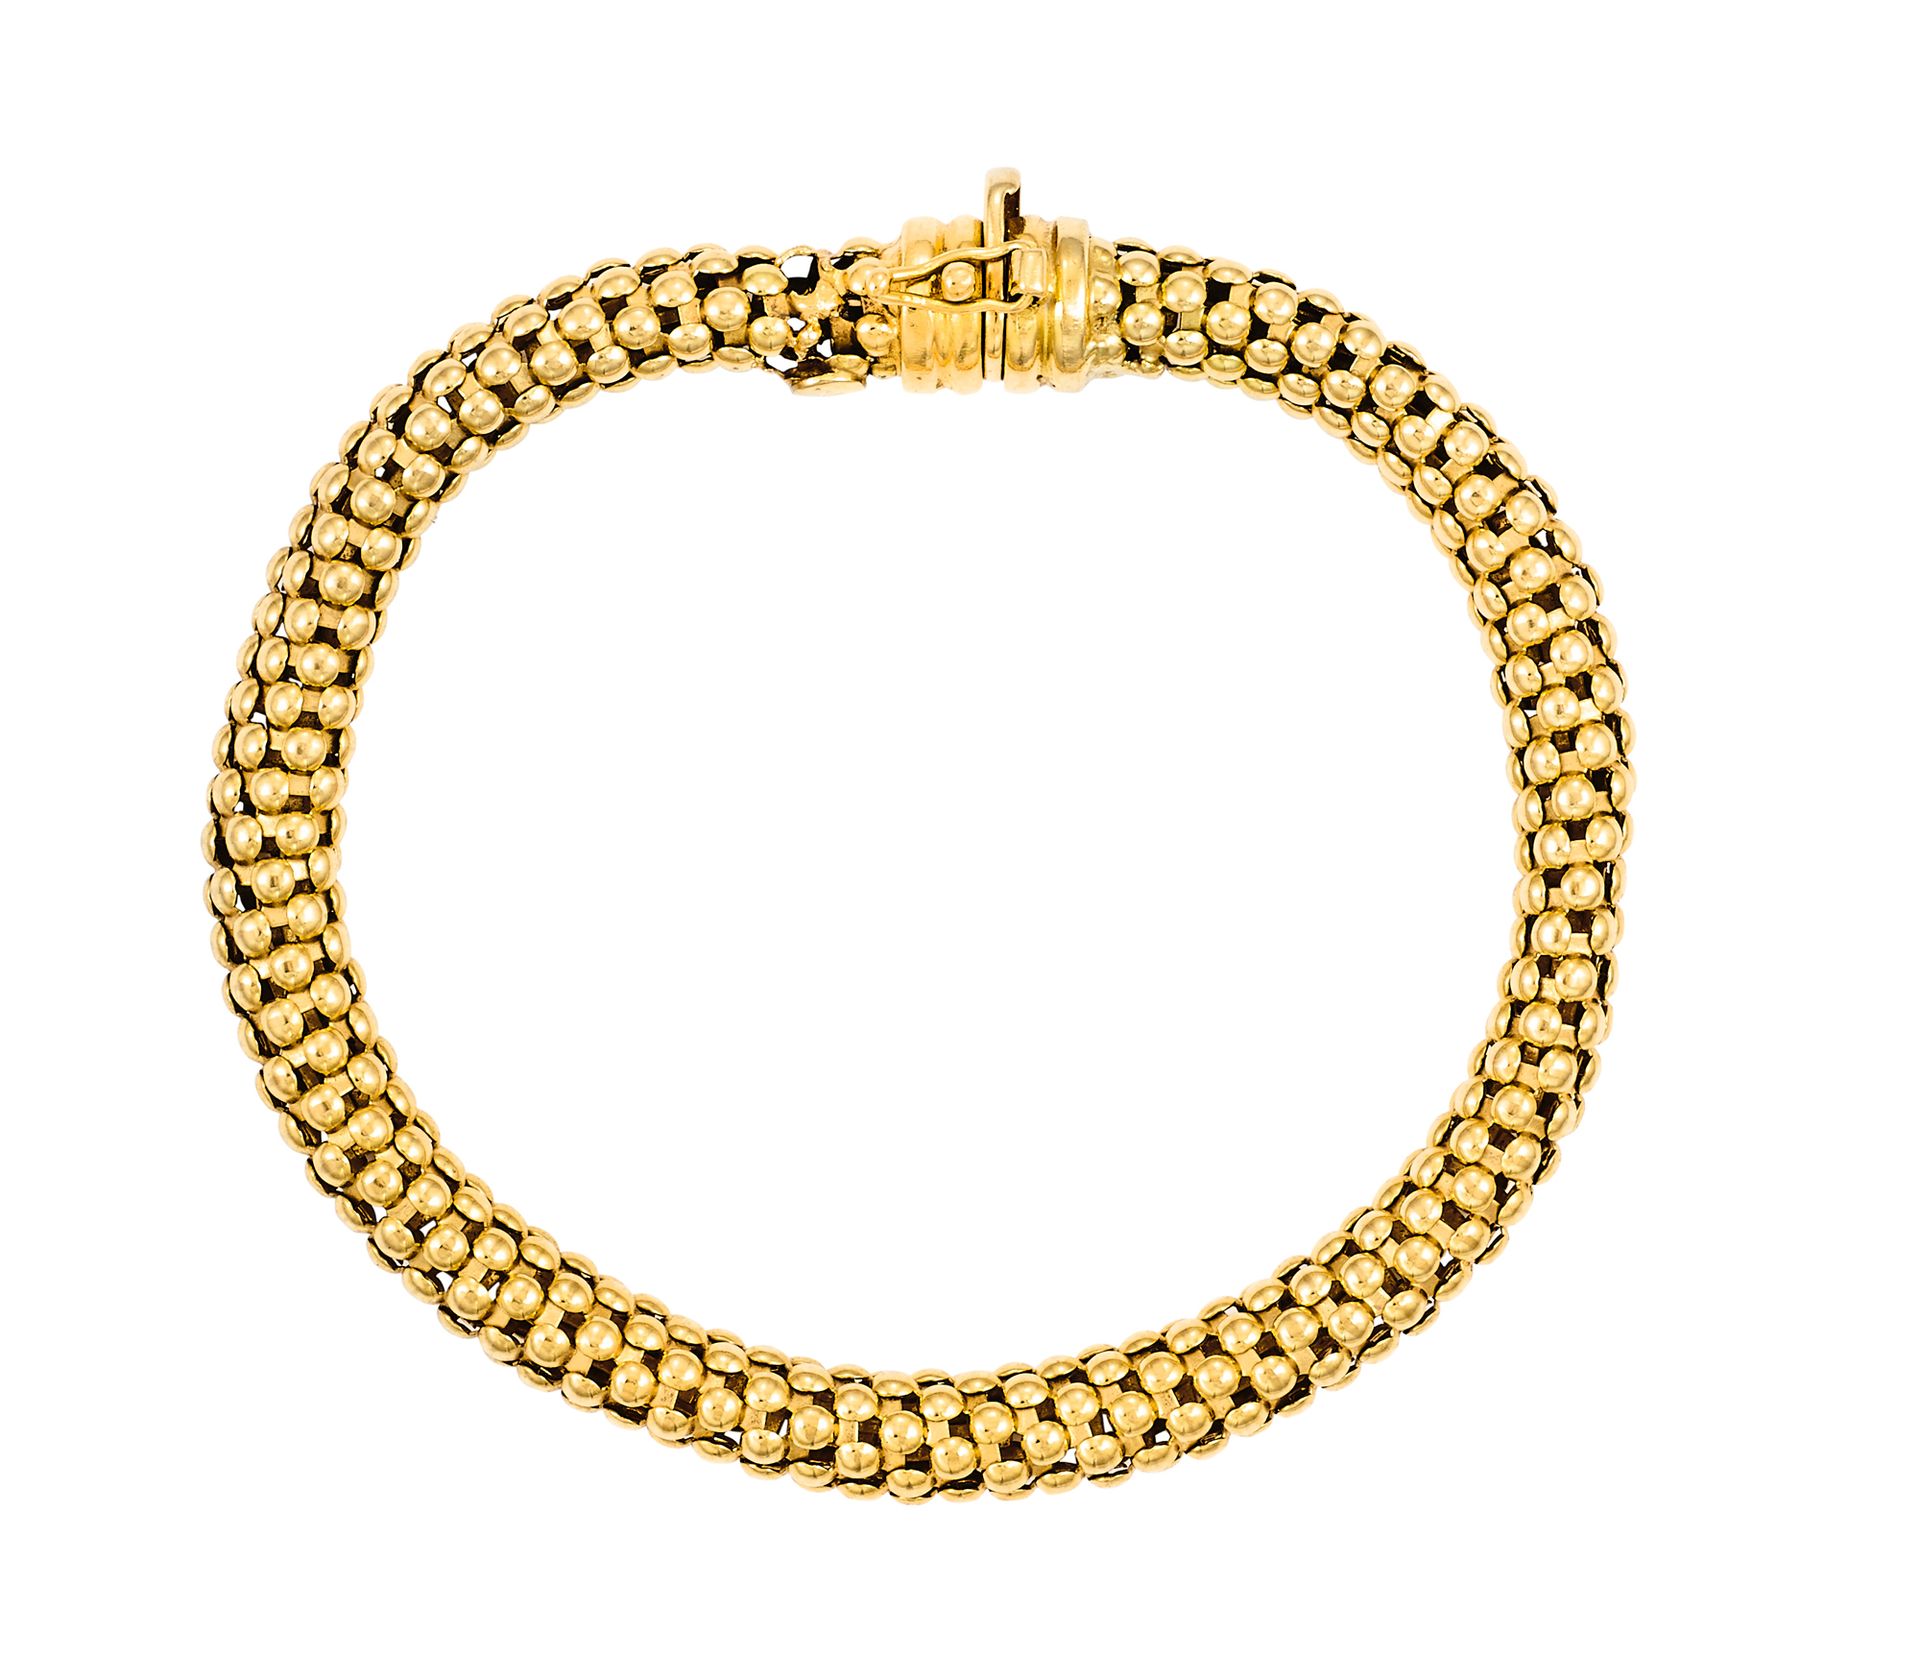 Bracelet souple en or jaune tubulaire ajouré (restauration)
L : 18 cm - Ø : 6 mm&hellip;